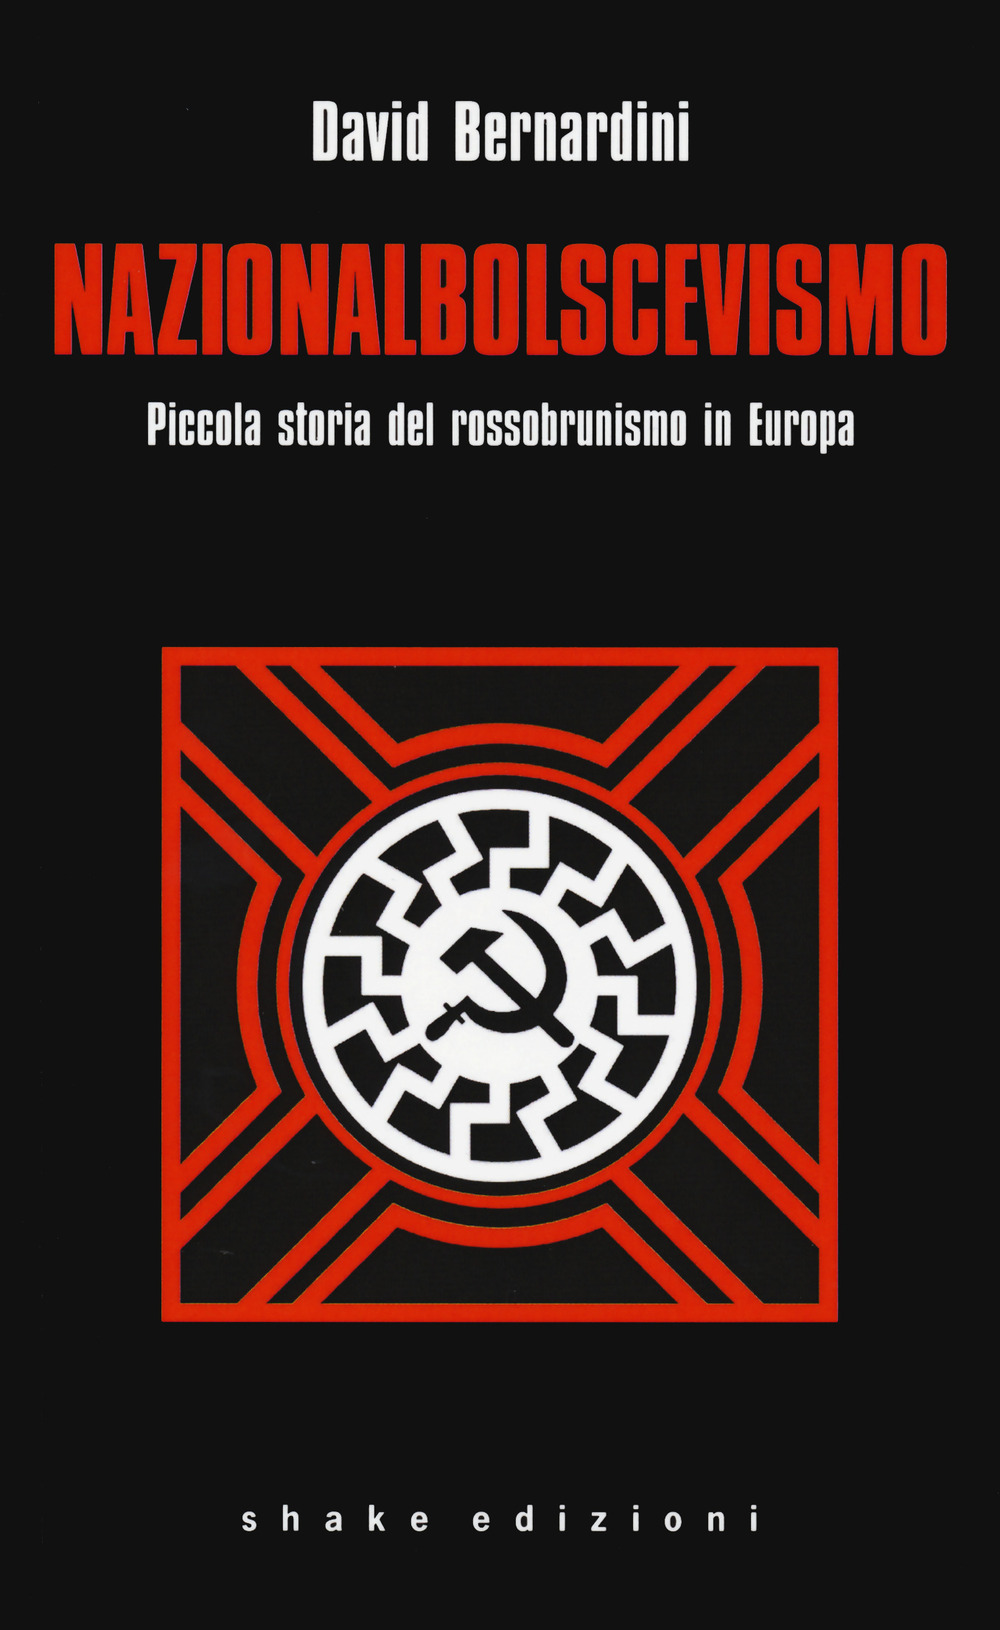 Nazionalbolscevismo. Piccola storia del rossobrunismo in Europa